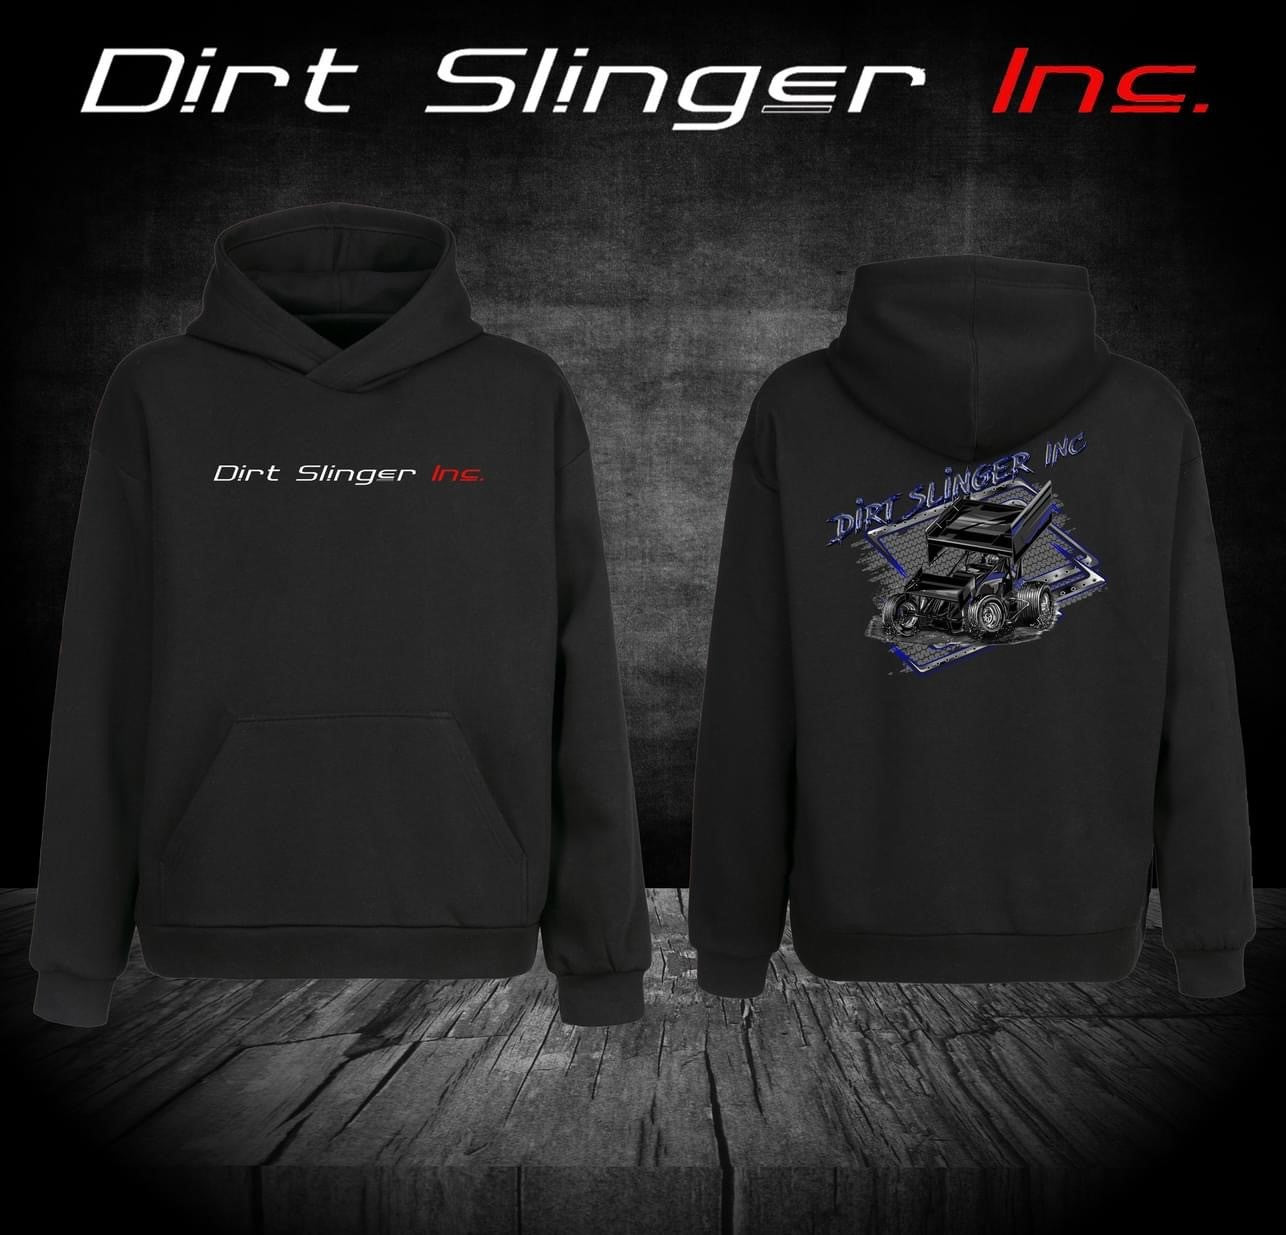 Dirt Slinger Inc Merch - Sprint Car